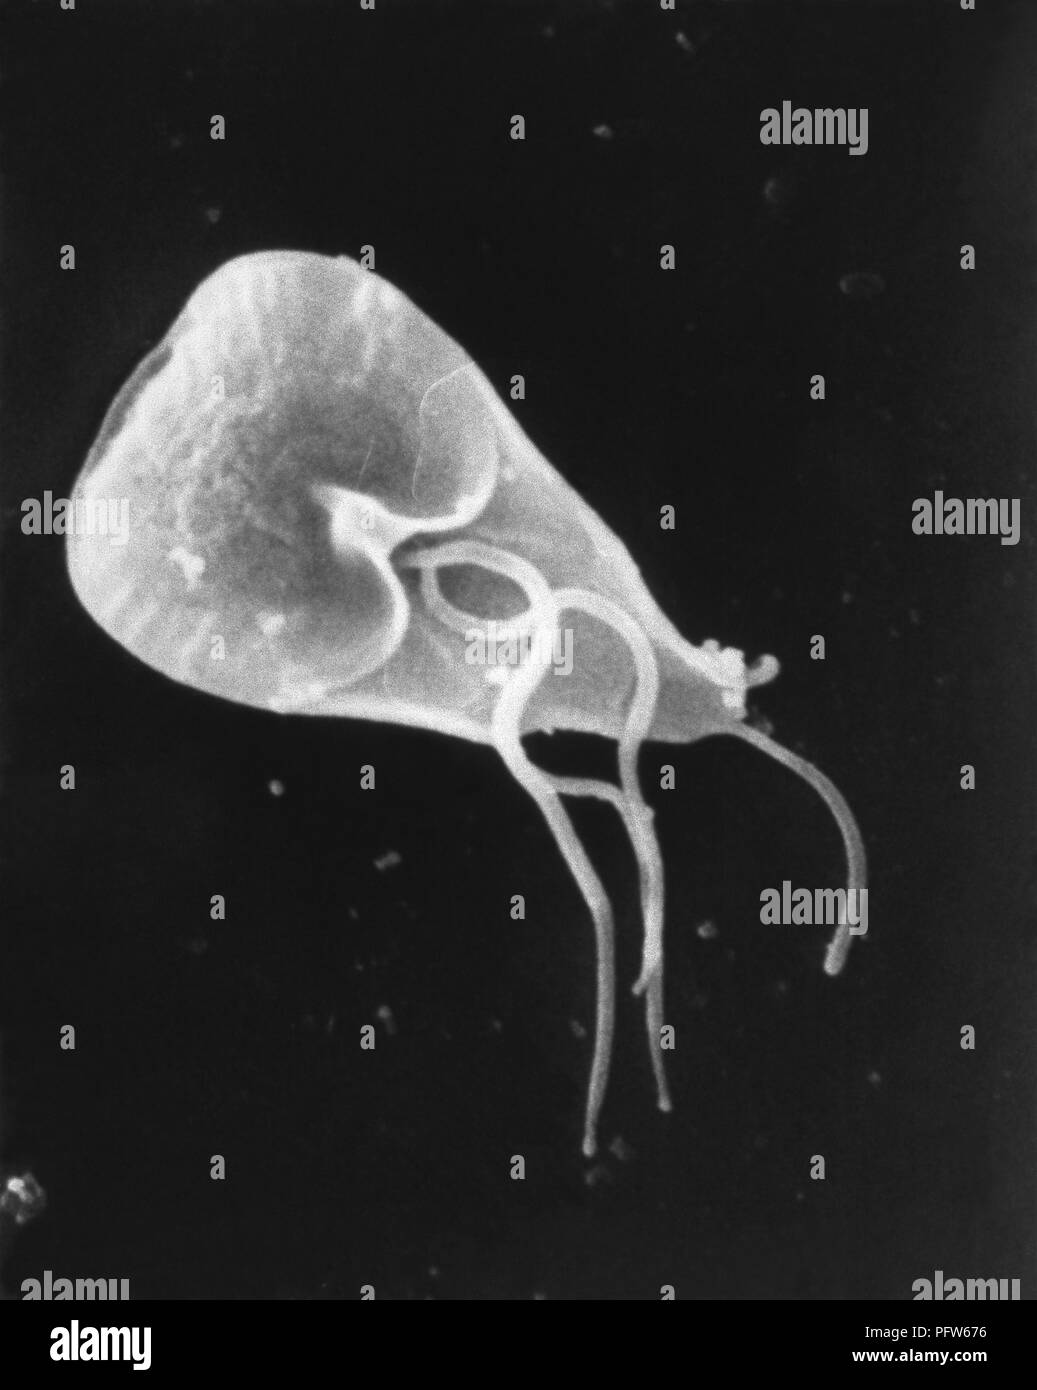 Giardia-lamblia-Parasiten in der photomicrograph Bild 2006 aufgedeckt. Mit freundlicher Seuchenkontrollzentren (CDC)/Janice Haney Carr. () Stockfoto